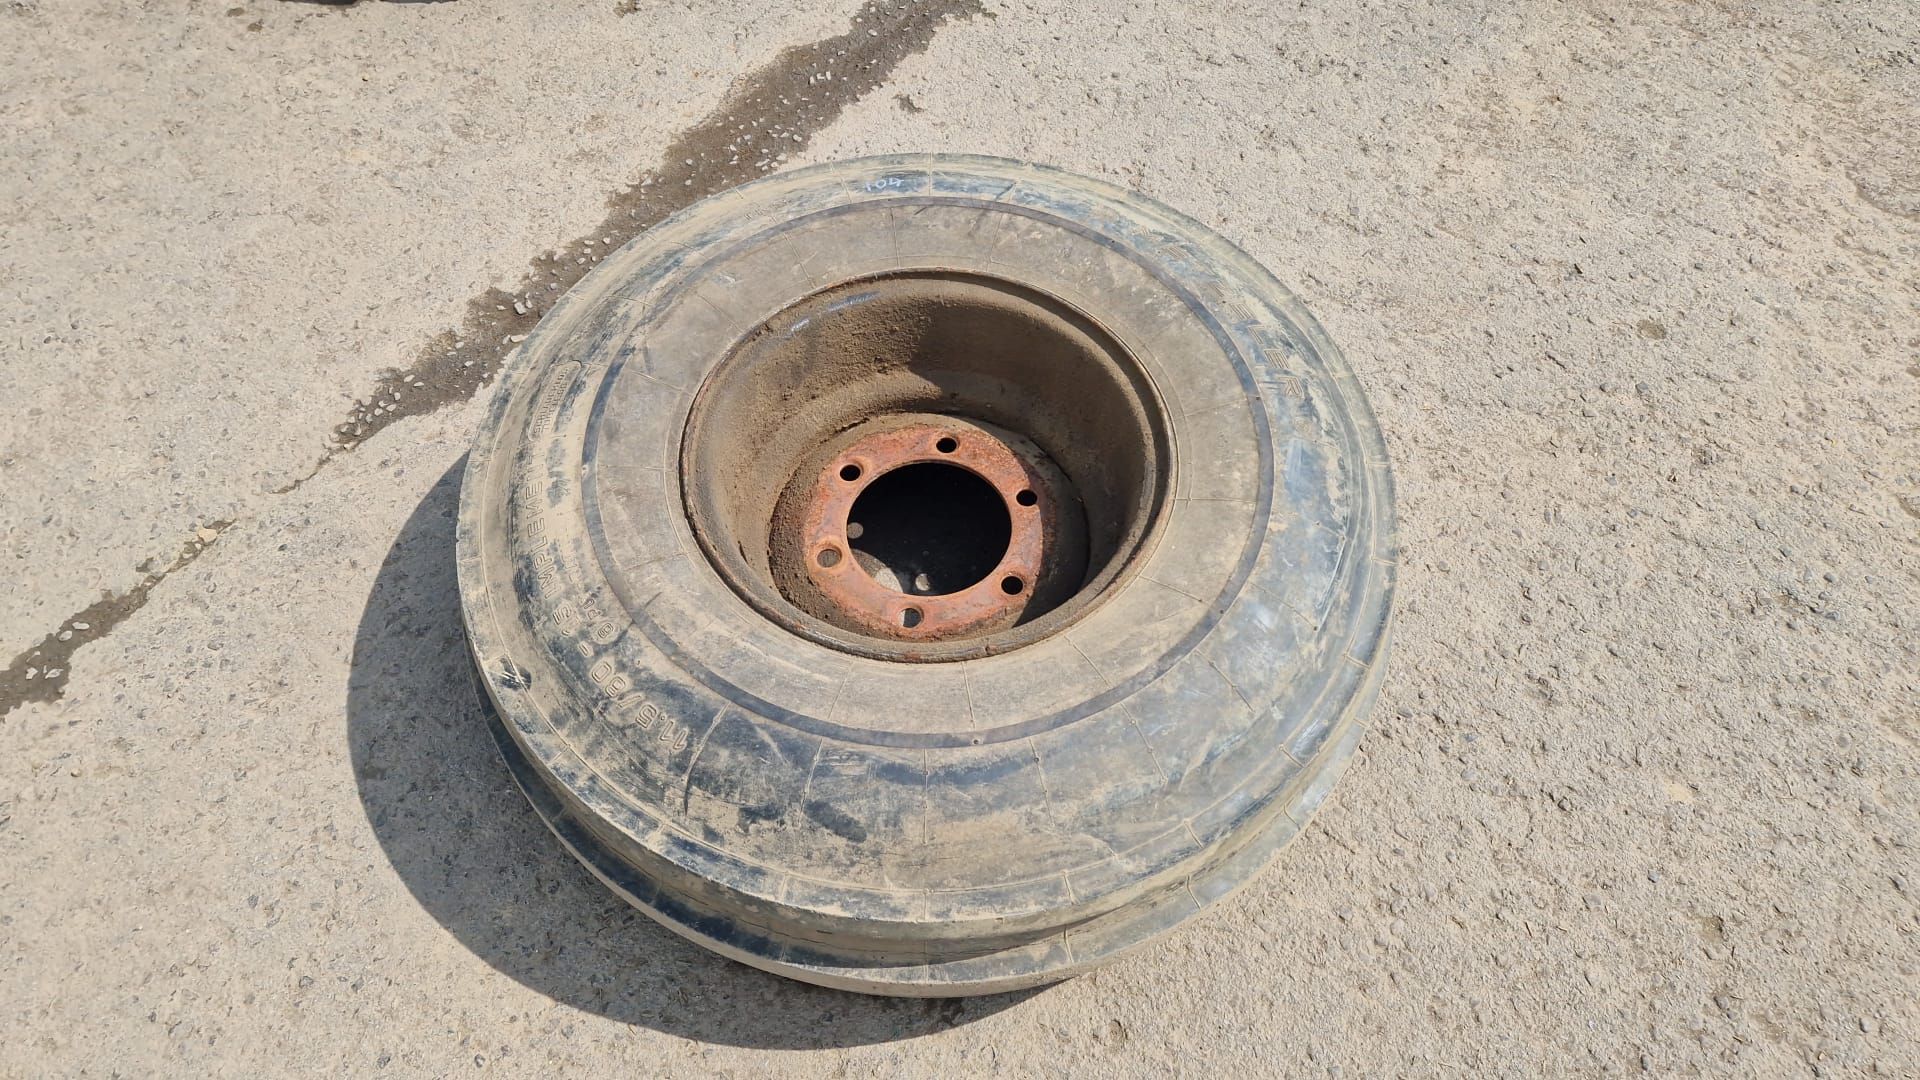 Melzeler 15.5/80-15 Implement tyre on 6 stud rim